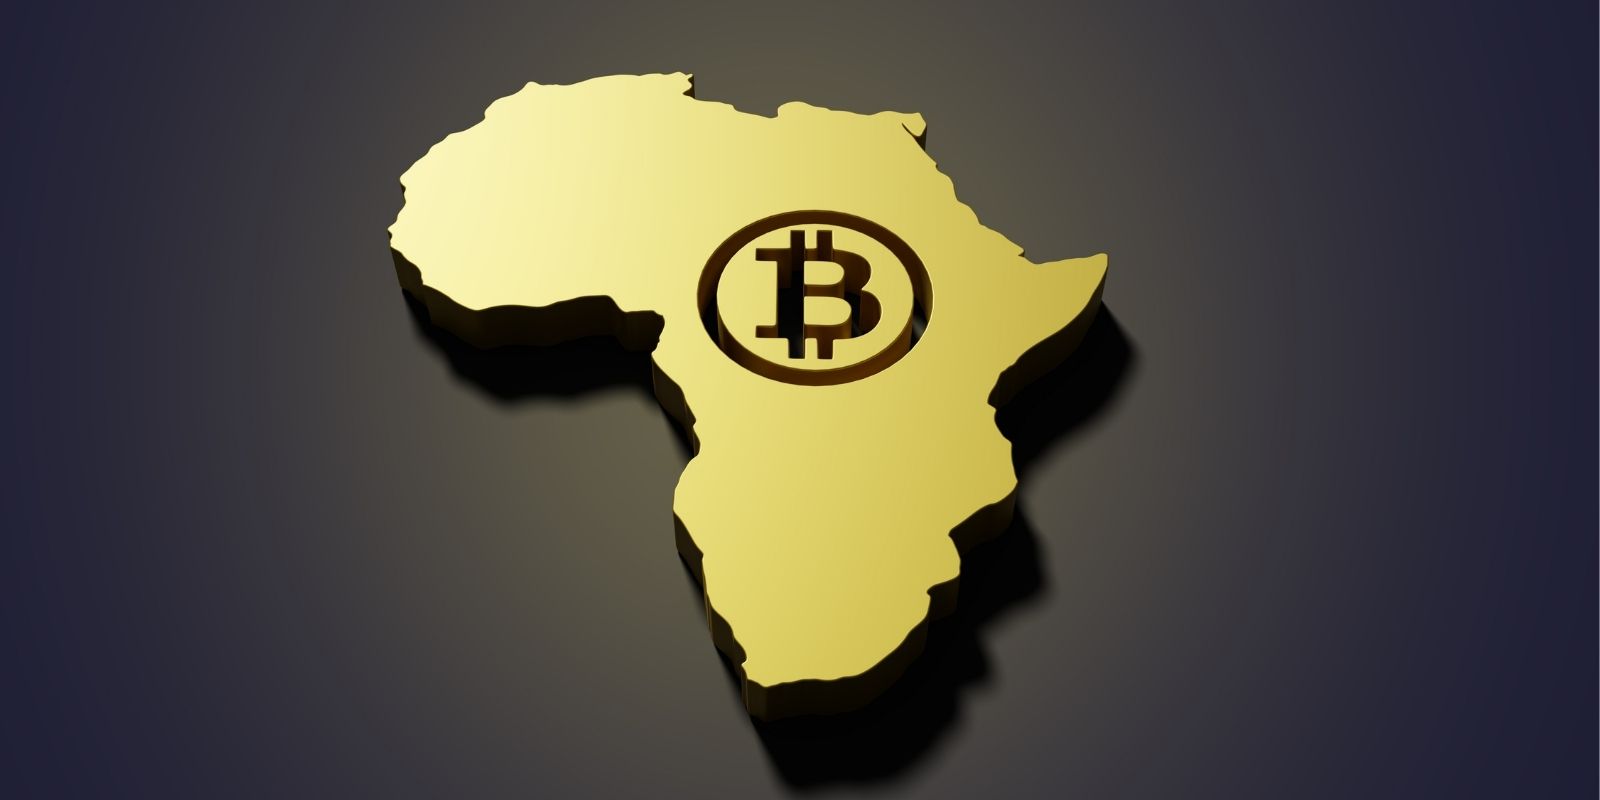 Jack Dorsey et Jay-Z créent un fonds pour le développement du Bitcoin en Afrique et en Inde